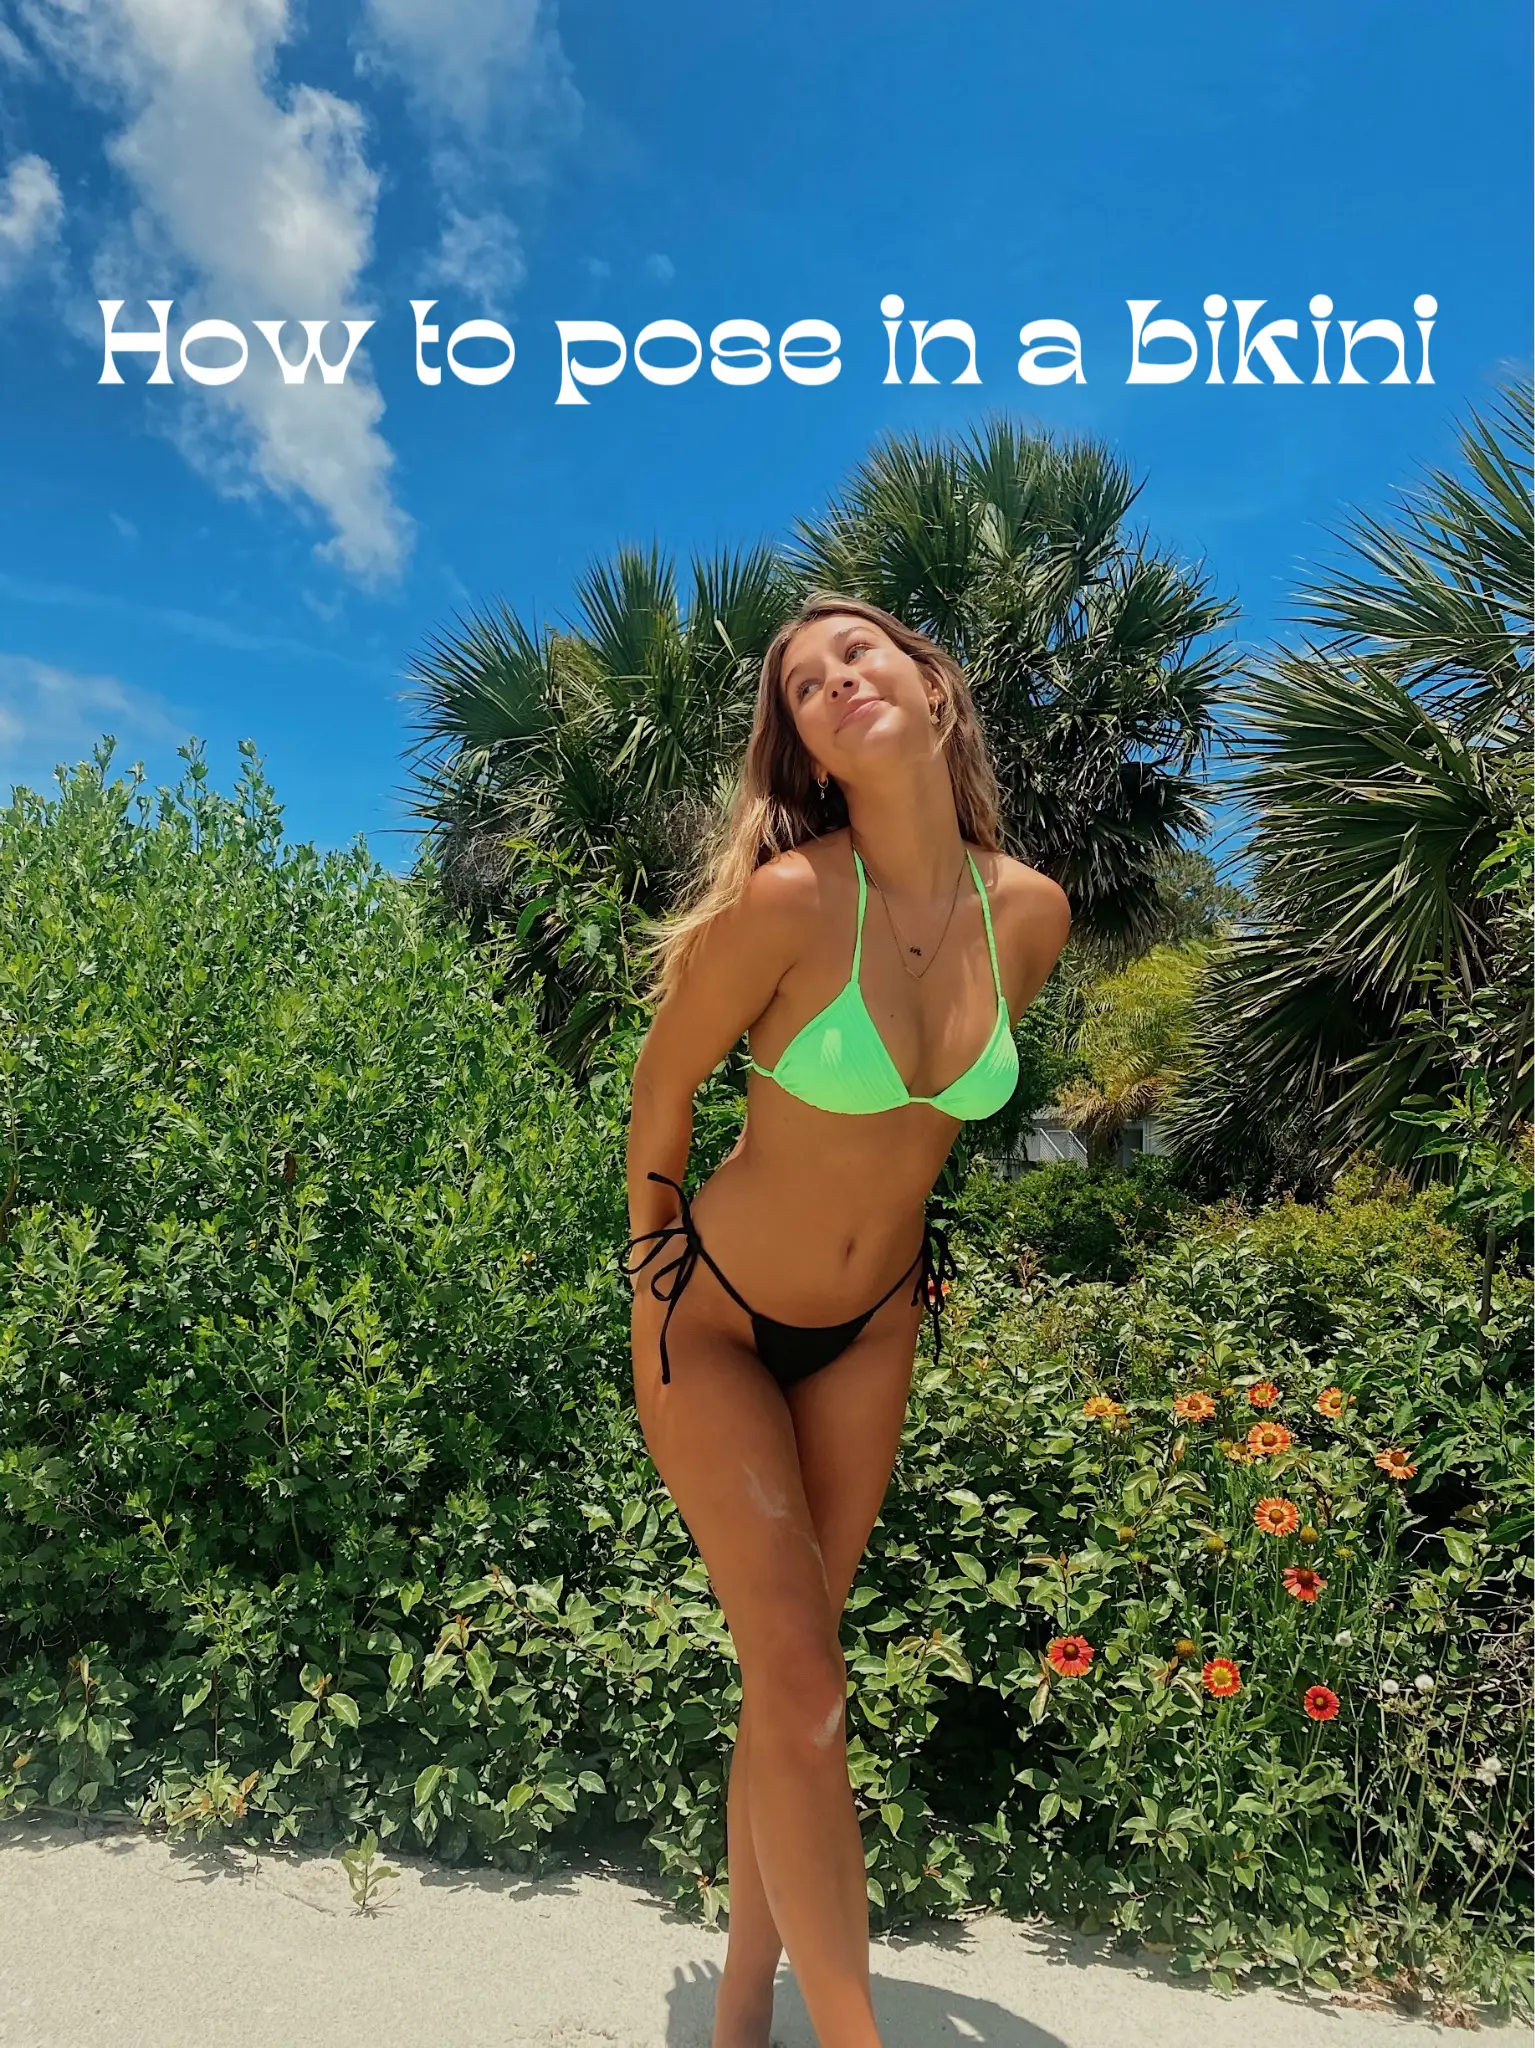  A woman in a bikini is posing in front of a bush.